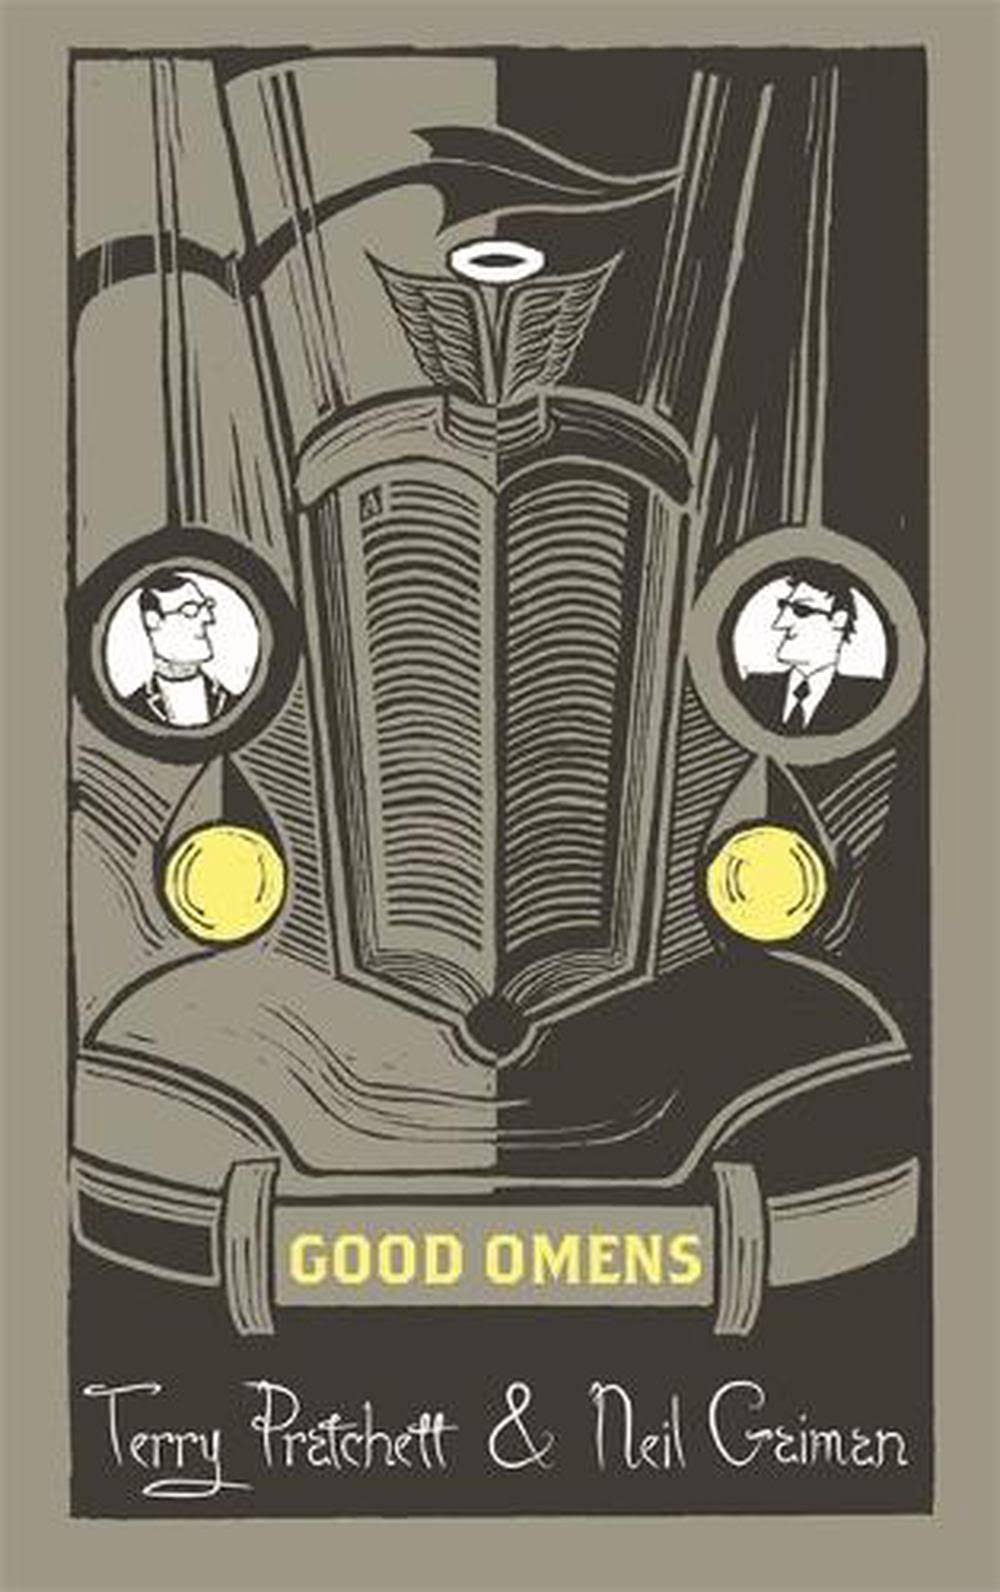 Good Omens - Neil Gaiman and Terry Pratchett